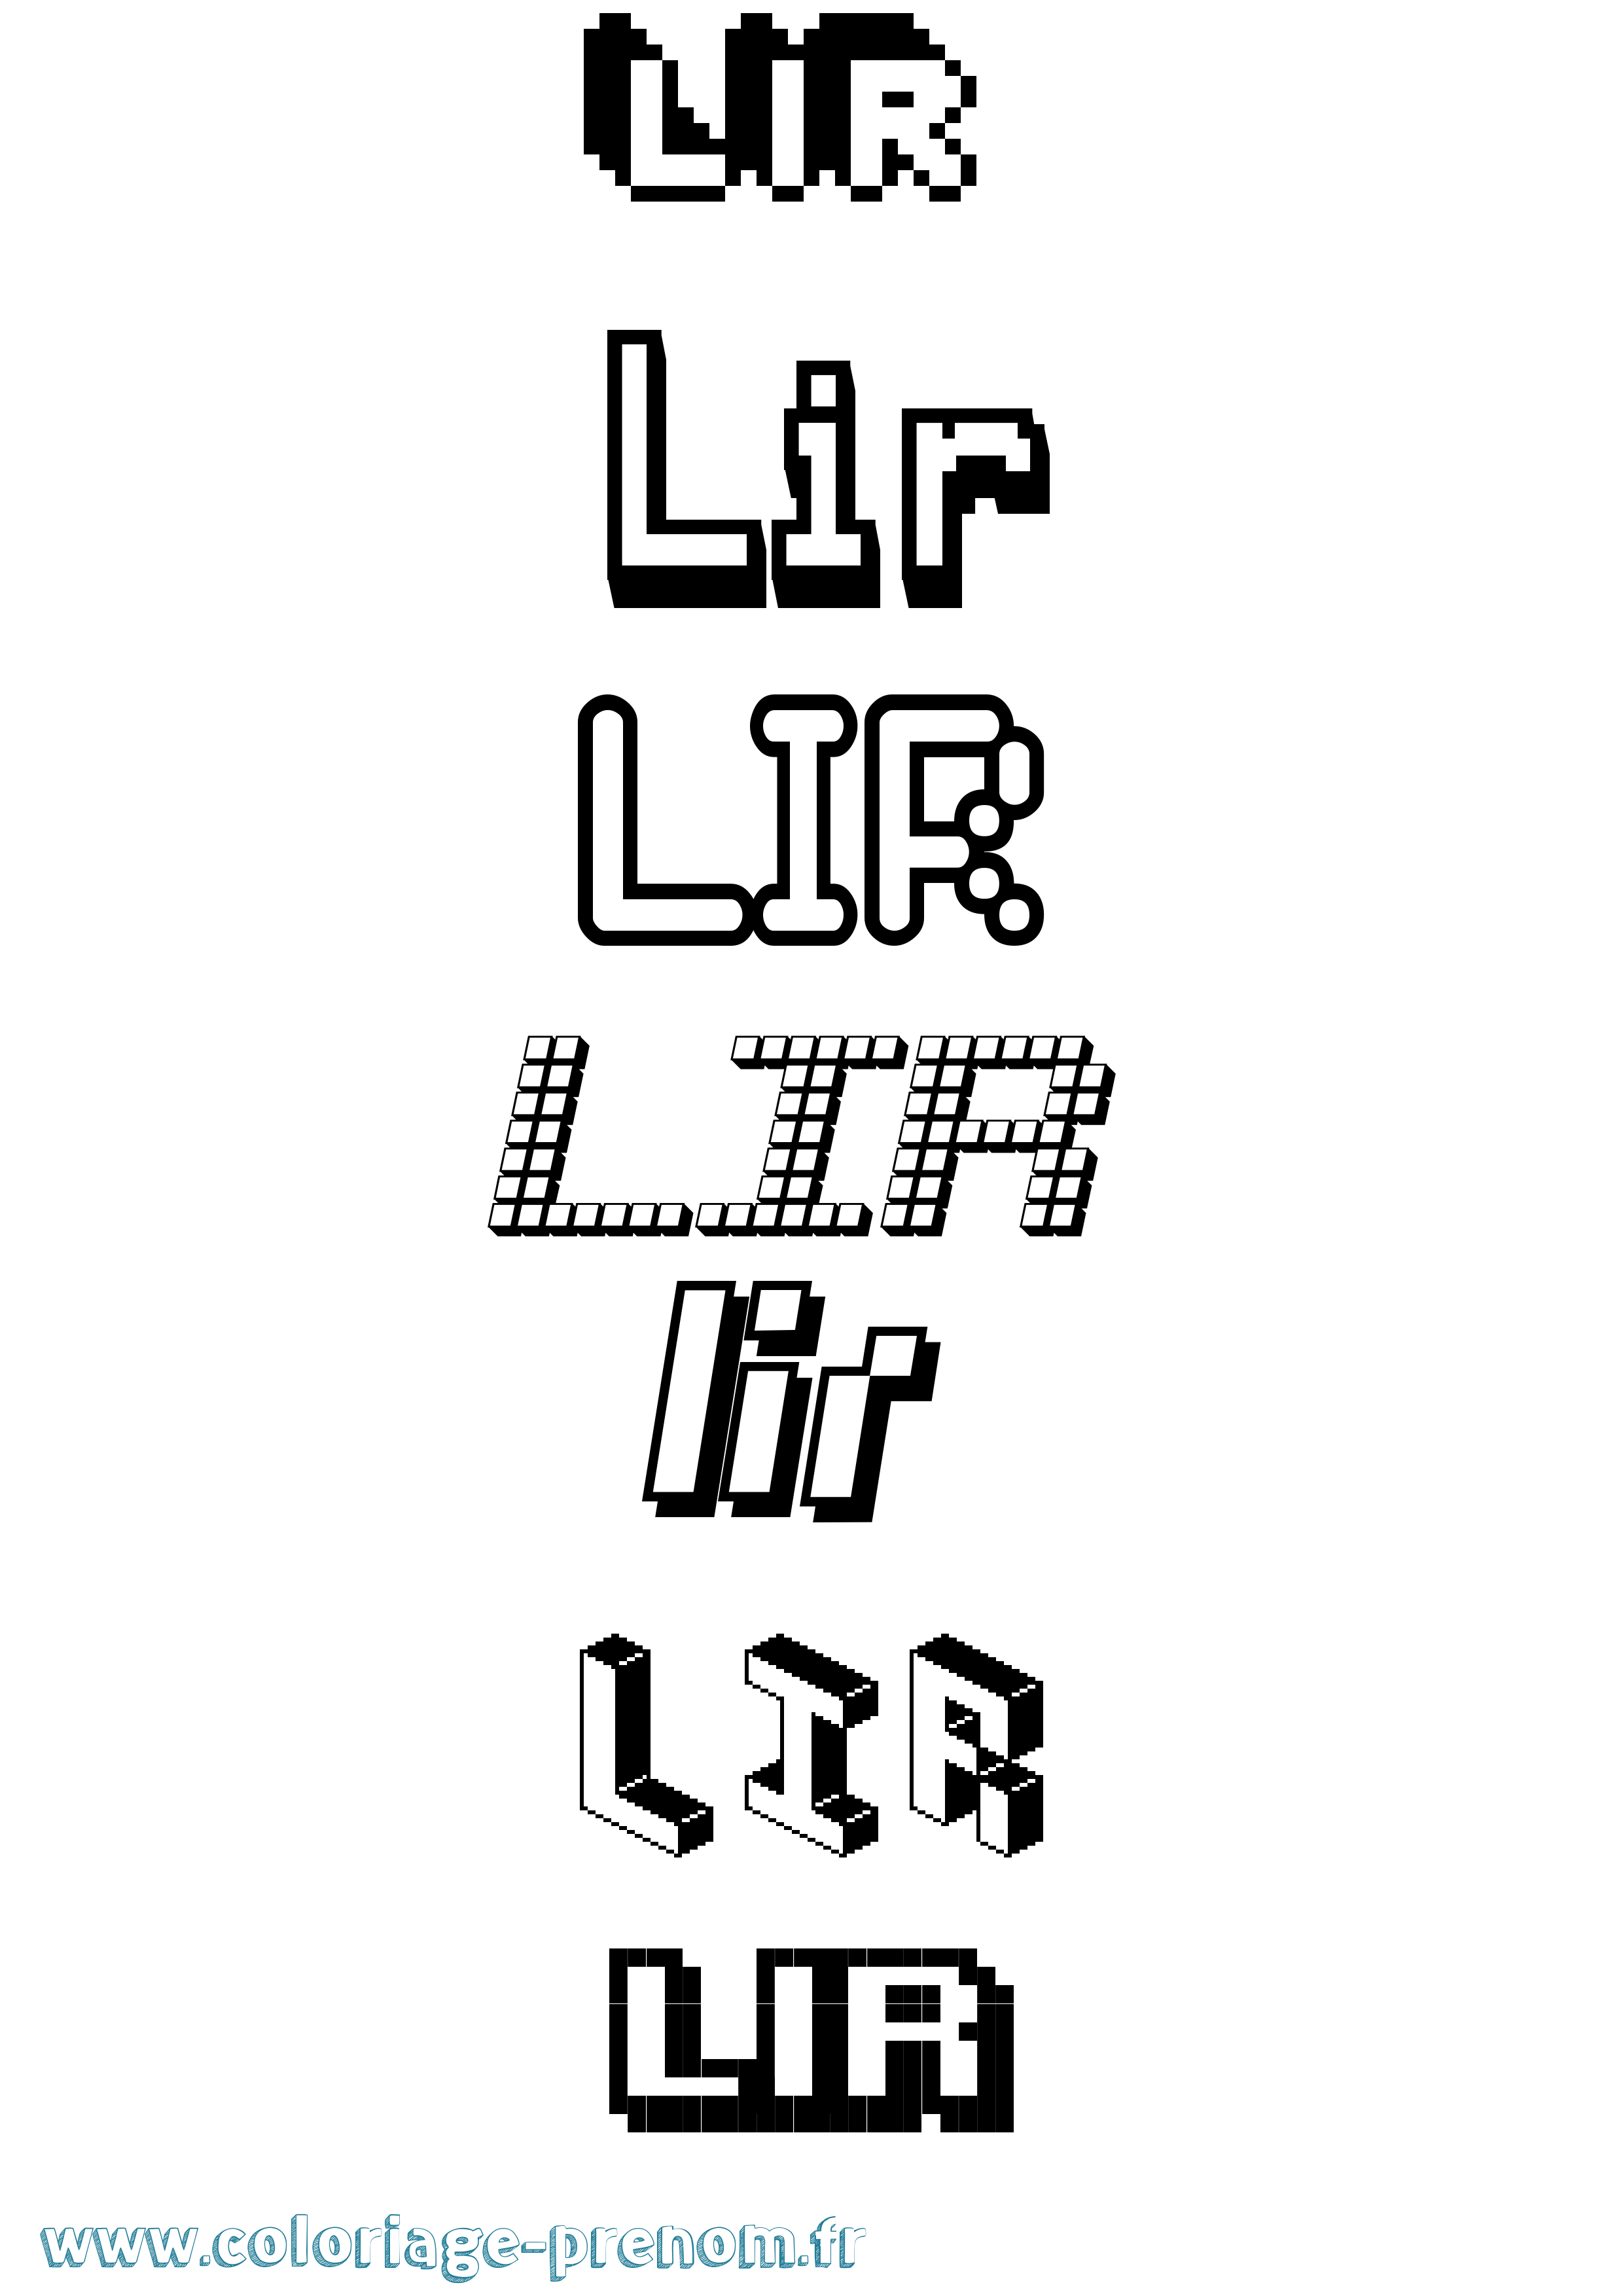 Coloriage prénom Lir Pixel